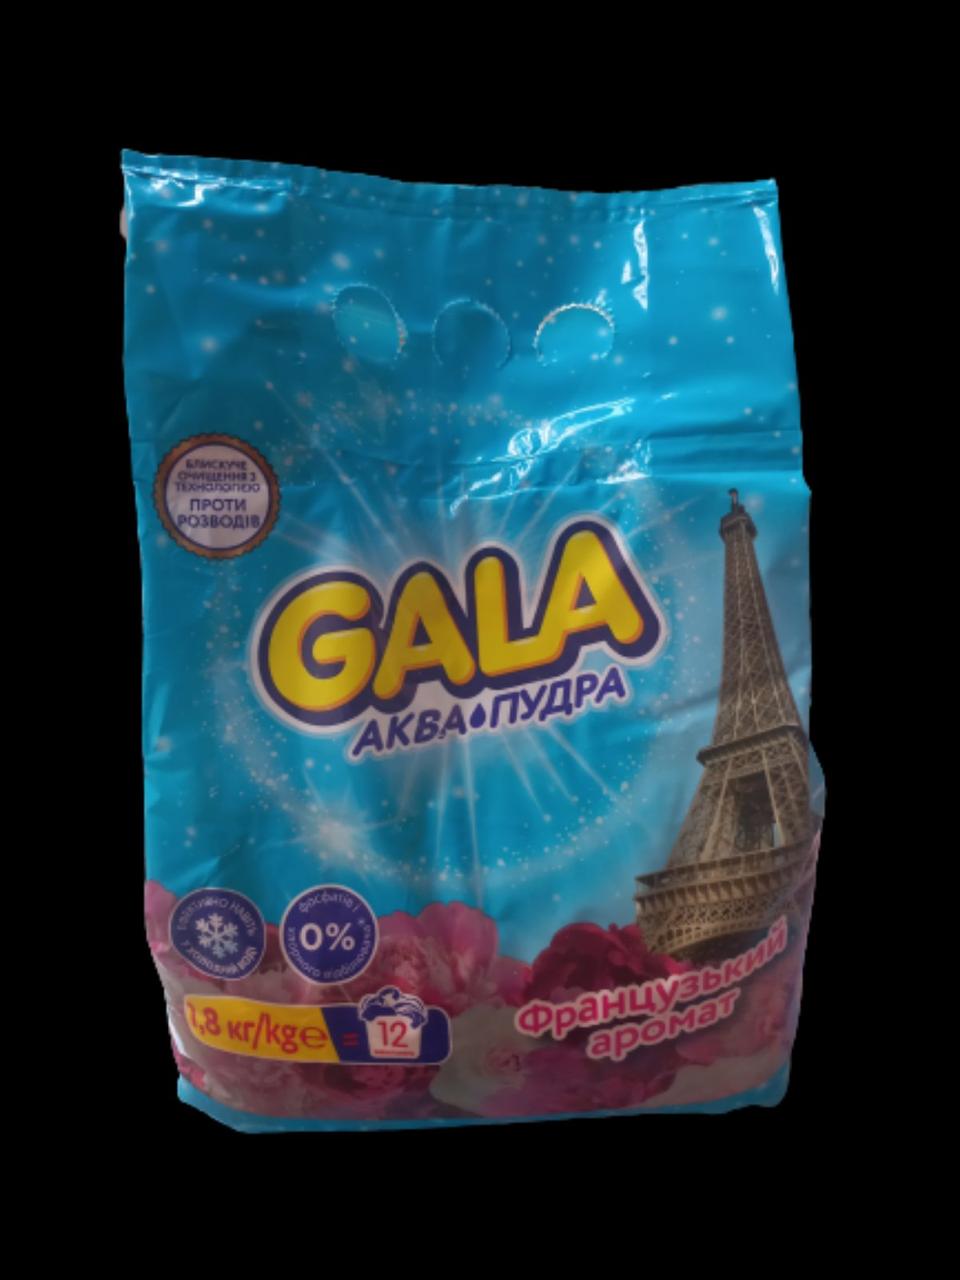 Пральний порошок Gala Аква-Пудра Французький аромат, автомат, 12 цикли прання, 1.8 кг